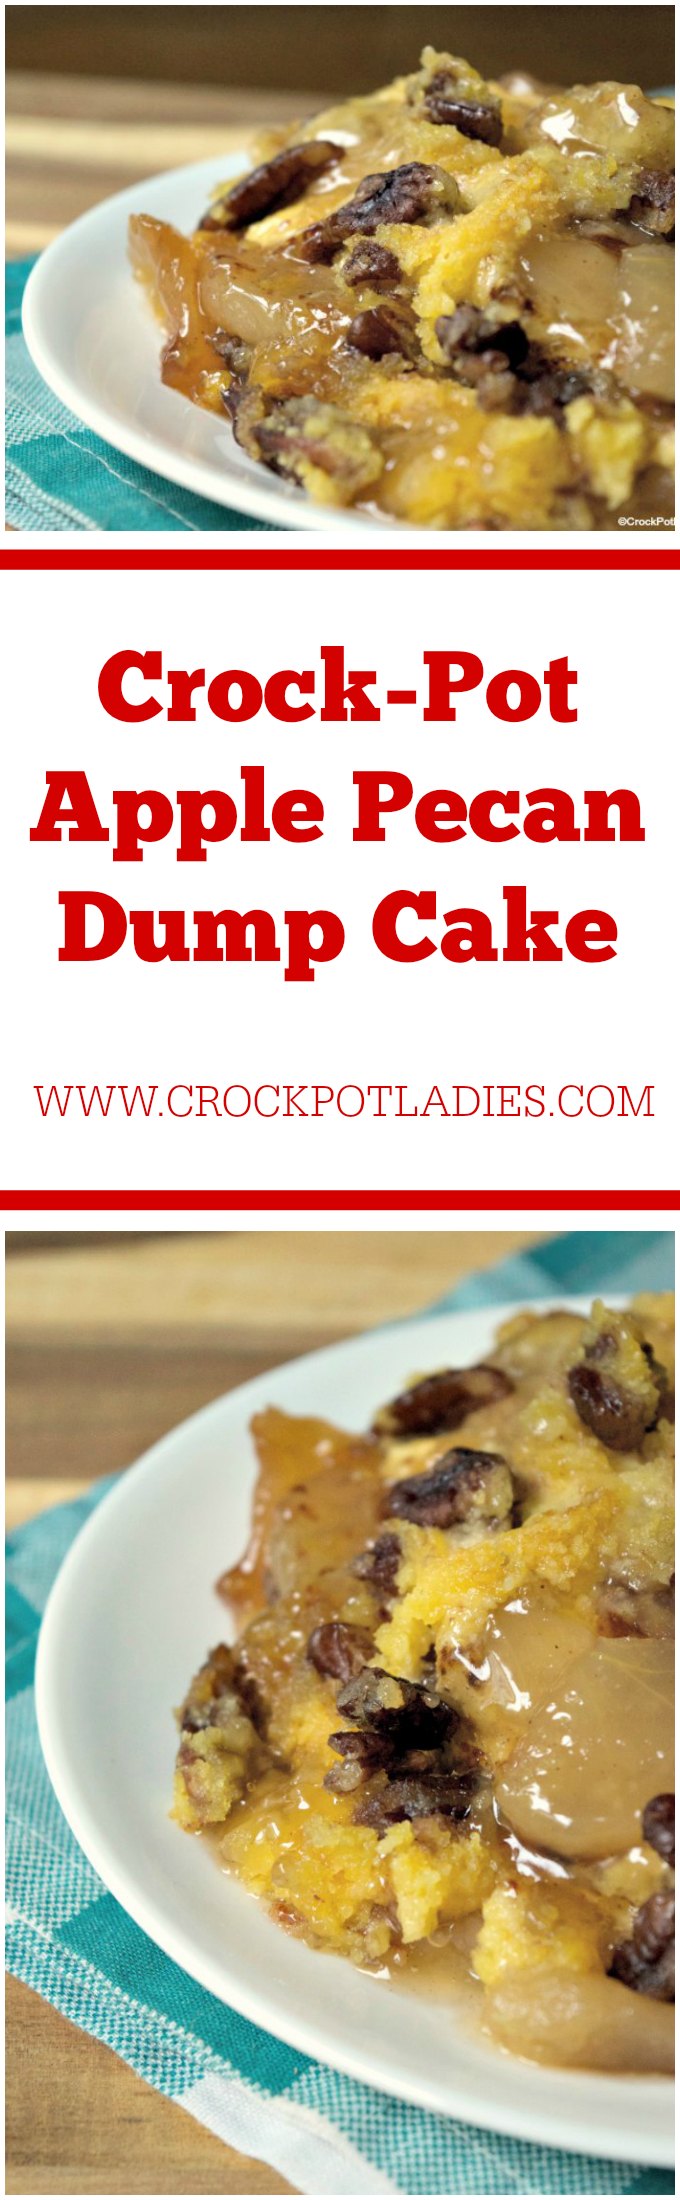 Crock-Pot Apple Pecan Dump Cake